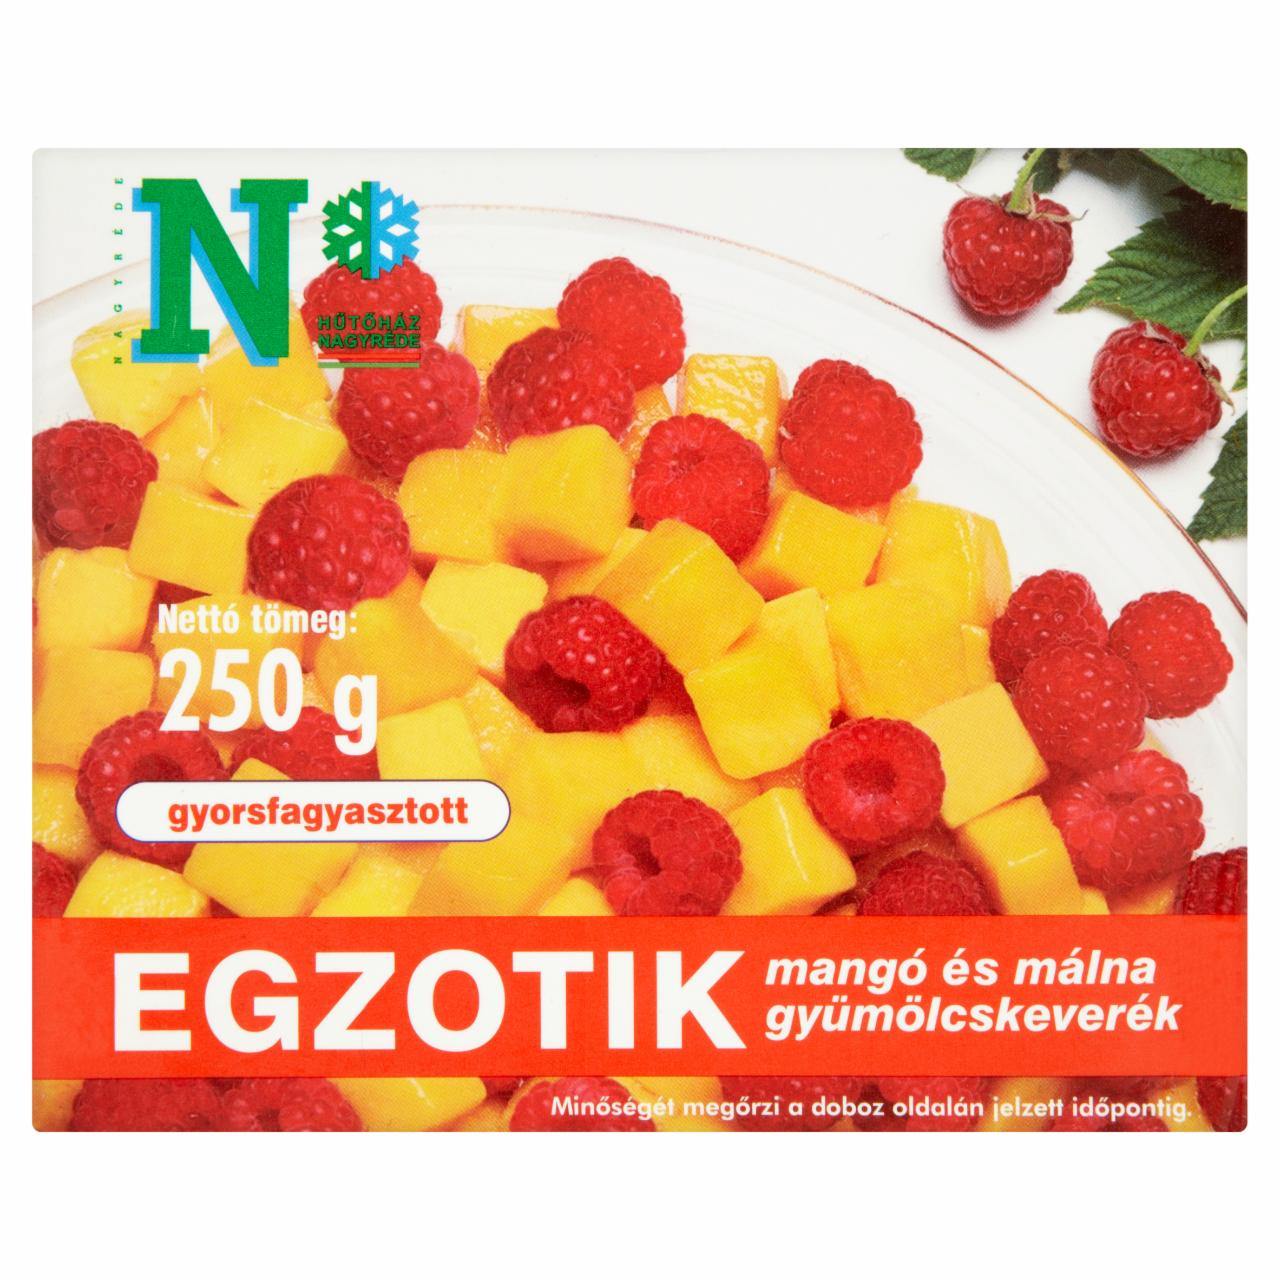 Képek - Egzotik gyorsfagyasztott mangó és málna gyümölcskeverék 250 g